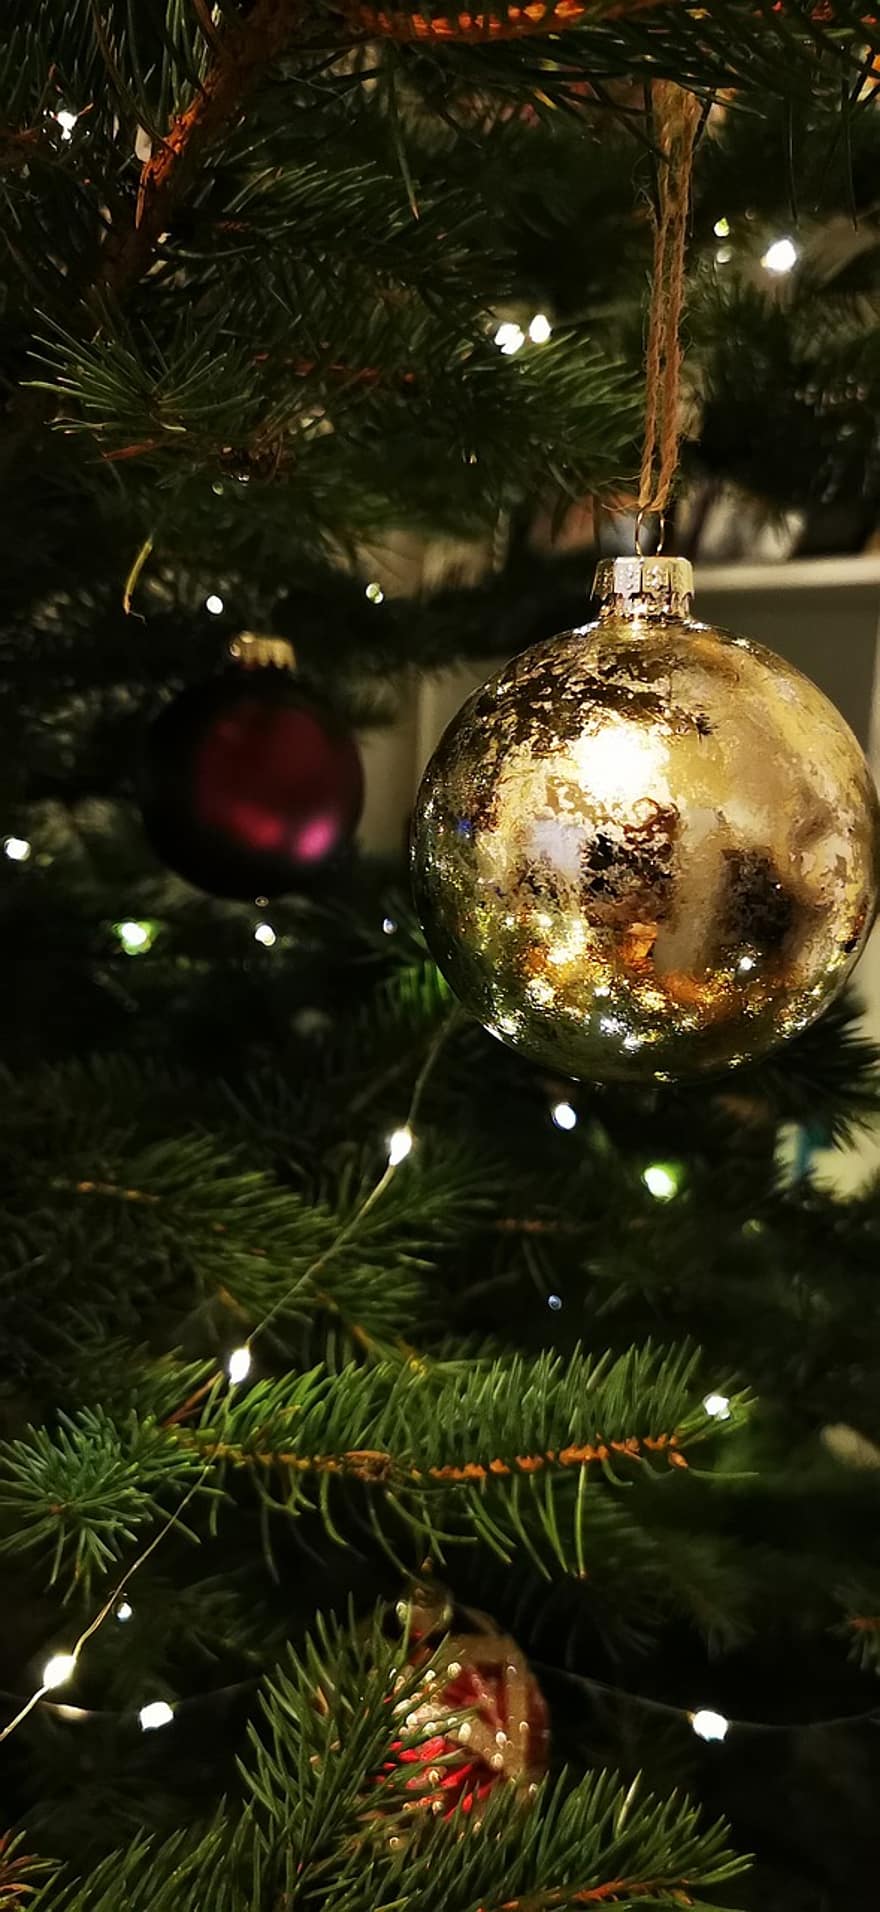 クリスマスの飾り、クリスマスツリー、クリスマス、モミの木、クリスマスボール、クリスマスのあかり、フェアリーライト、クリスマス安物の宝石、クリスマスの装飾、オーナメント、安物の宝石